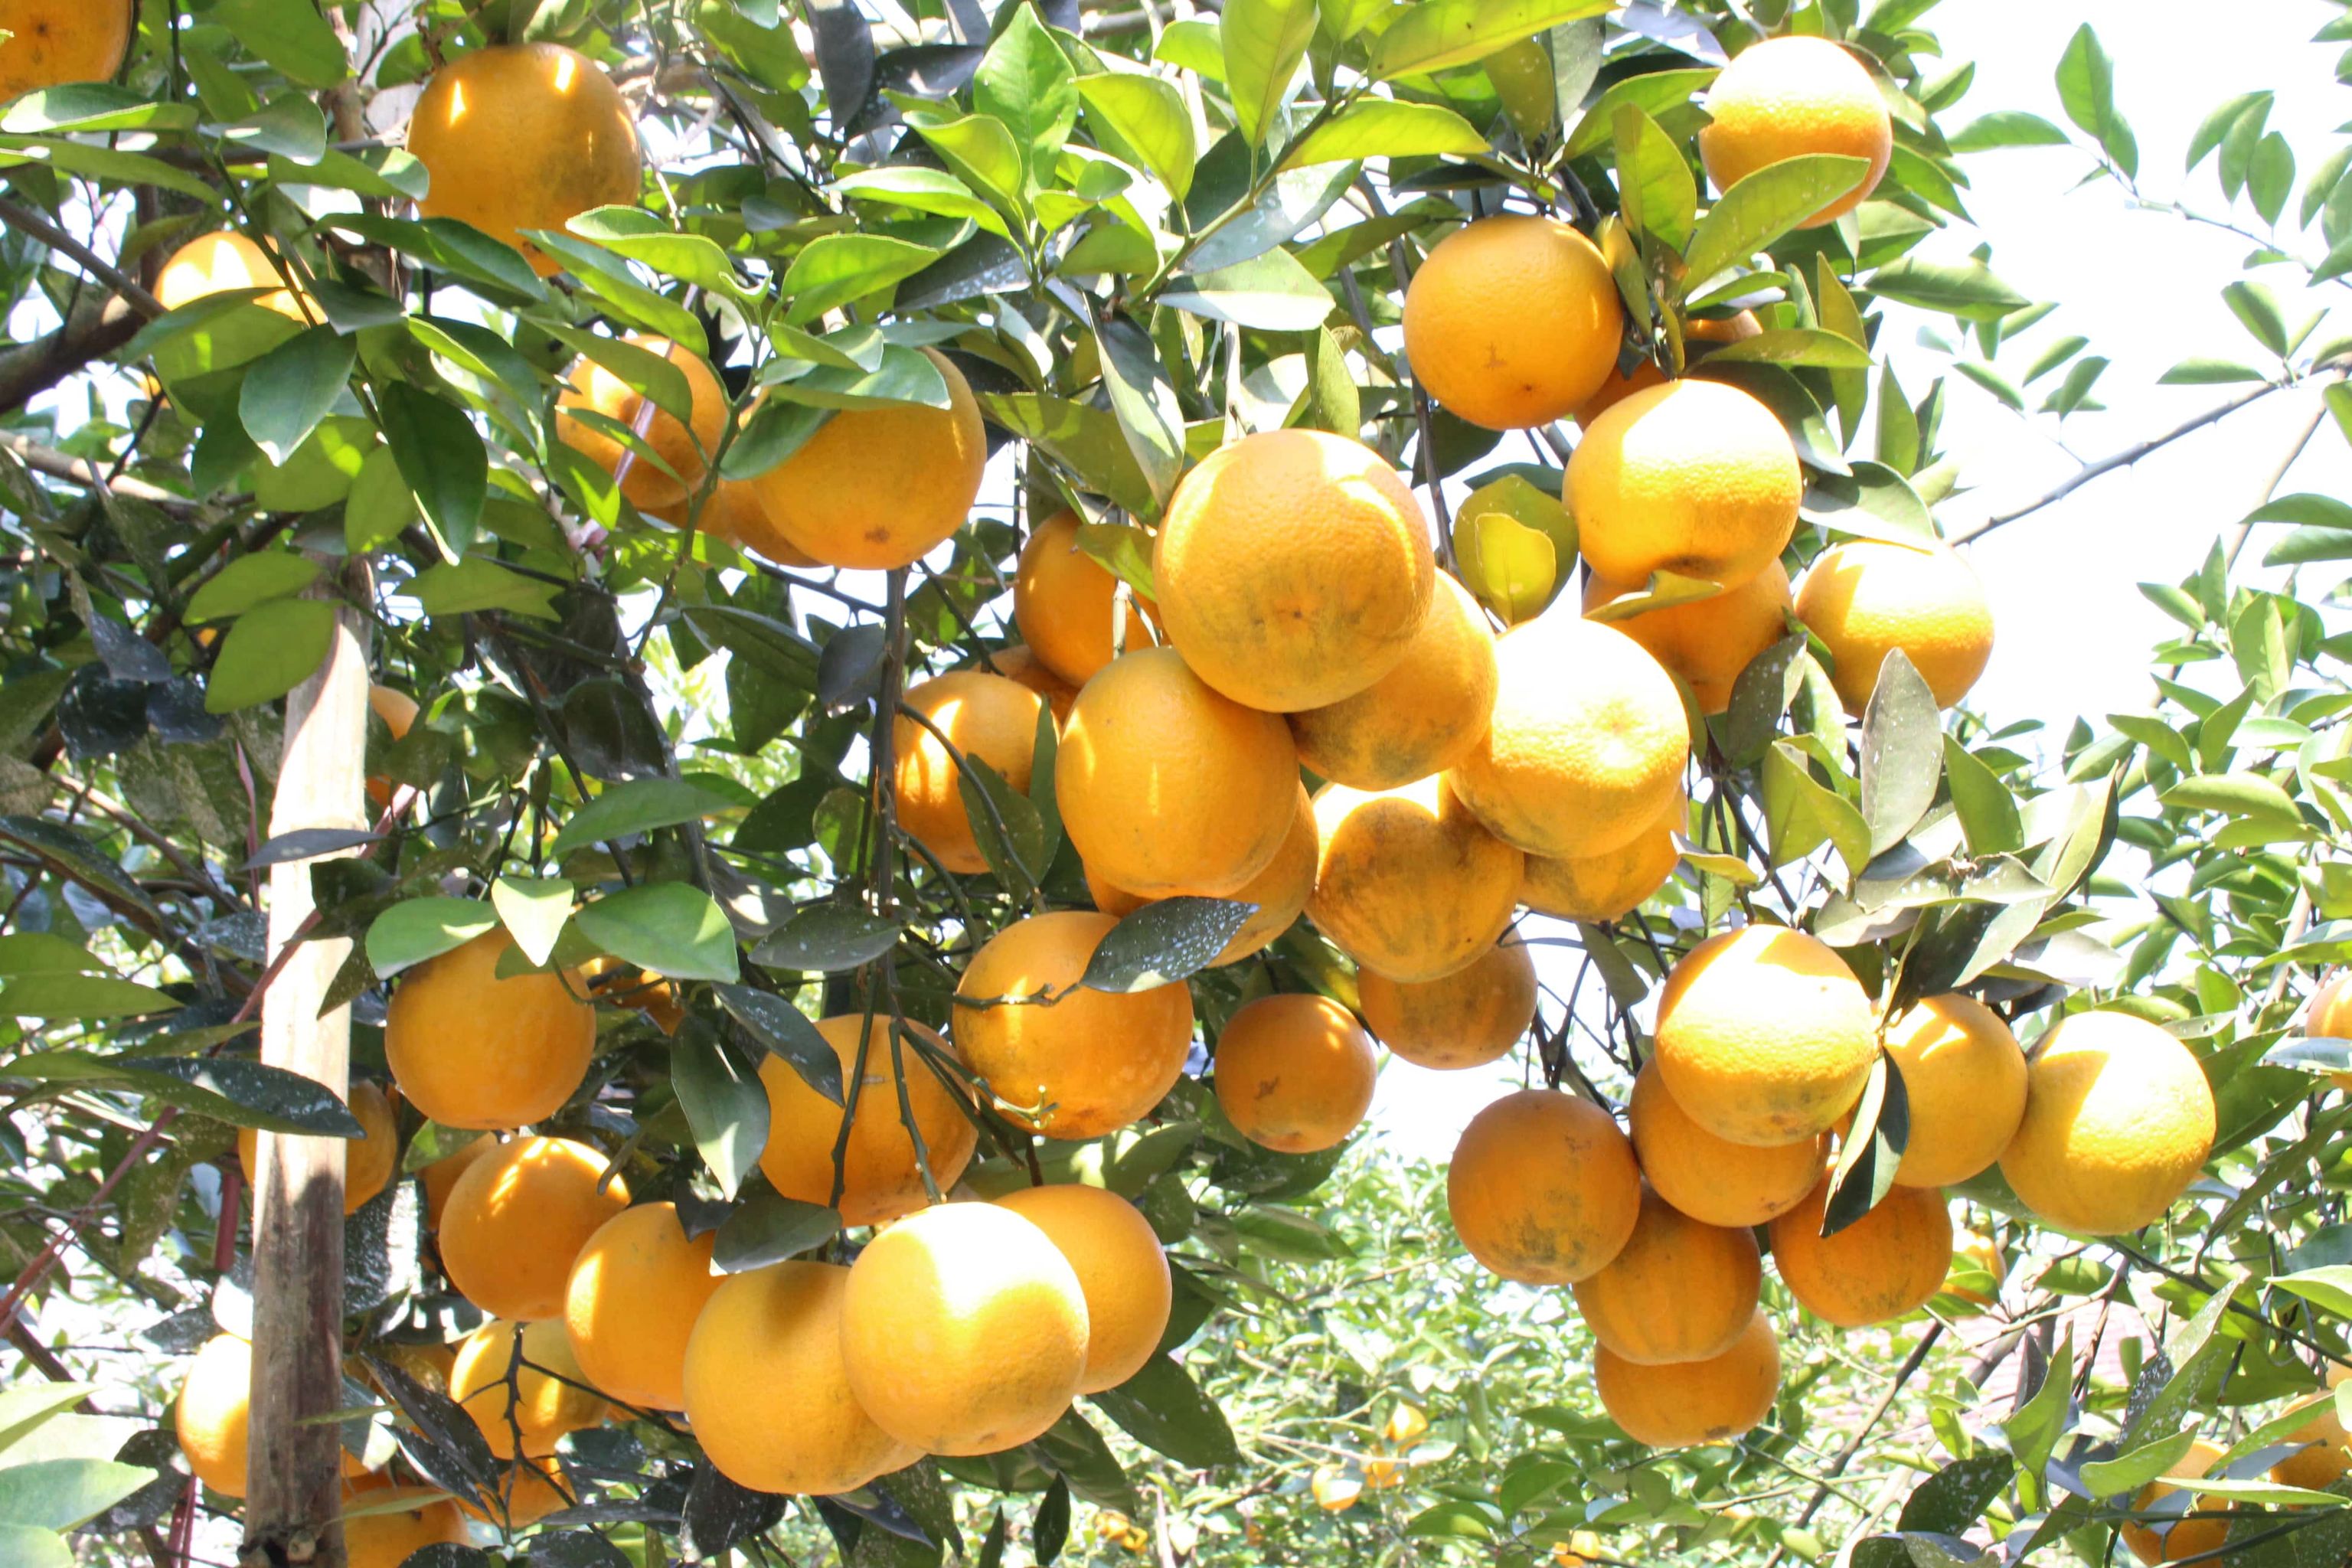 Đạt chuẩn VietGAP, đạt 3 sao OCOP song vì dịch bệnh đang diễn biến phức tạp nên nhiều vùng trồng cam ở Nghệ An vẫn chưa tìm được đầu ra ổn định 